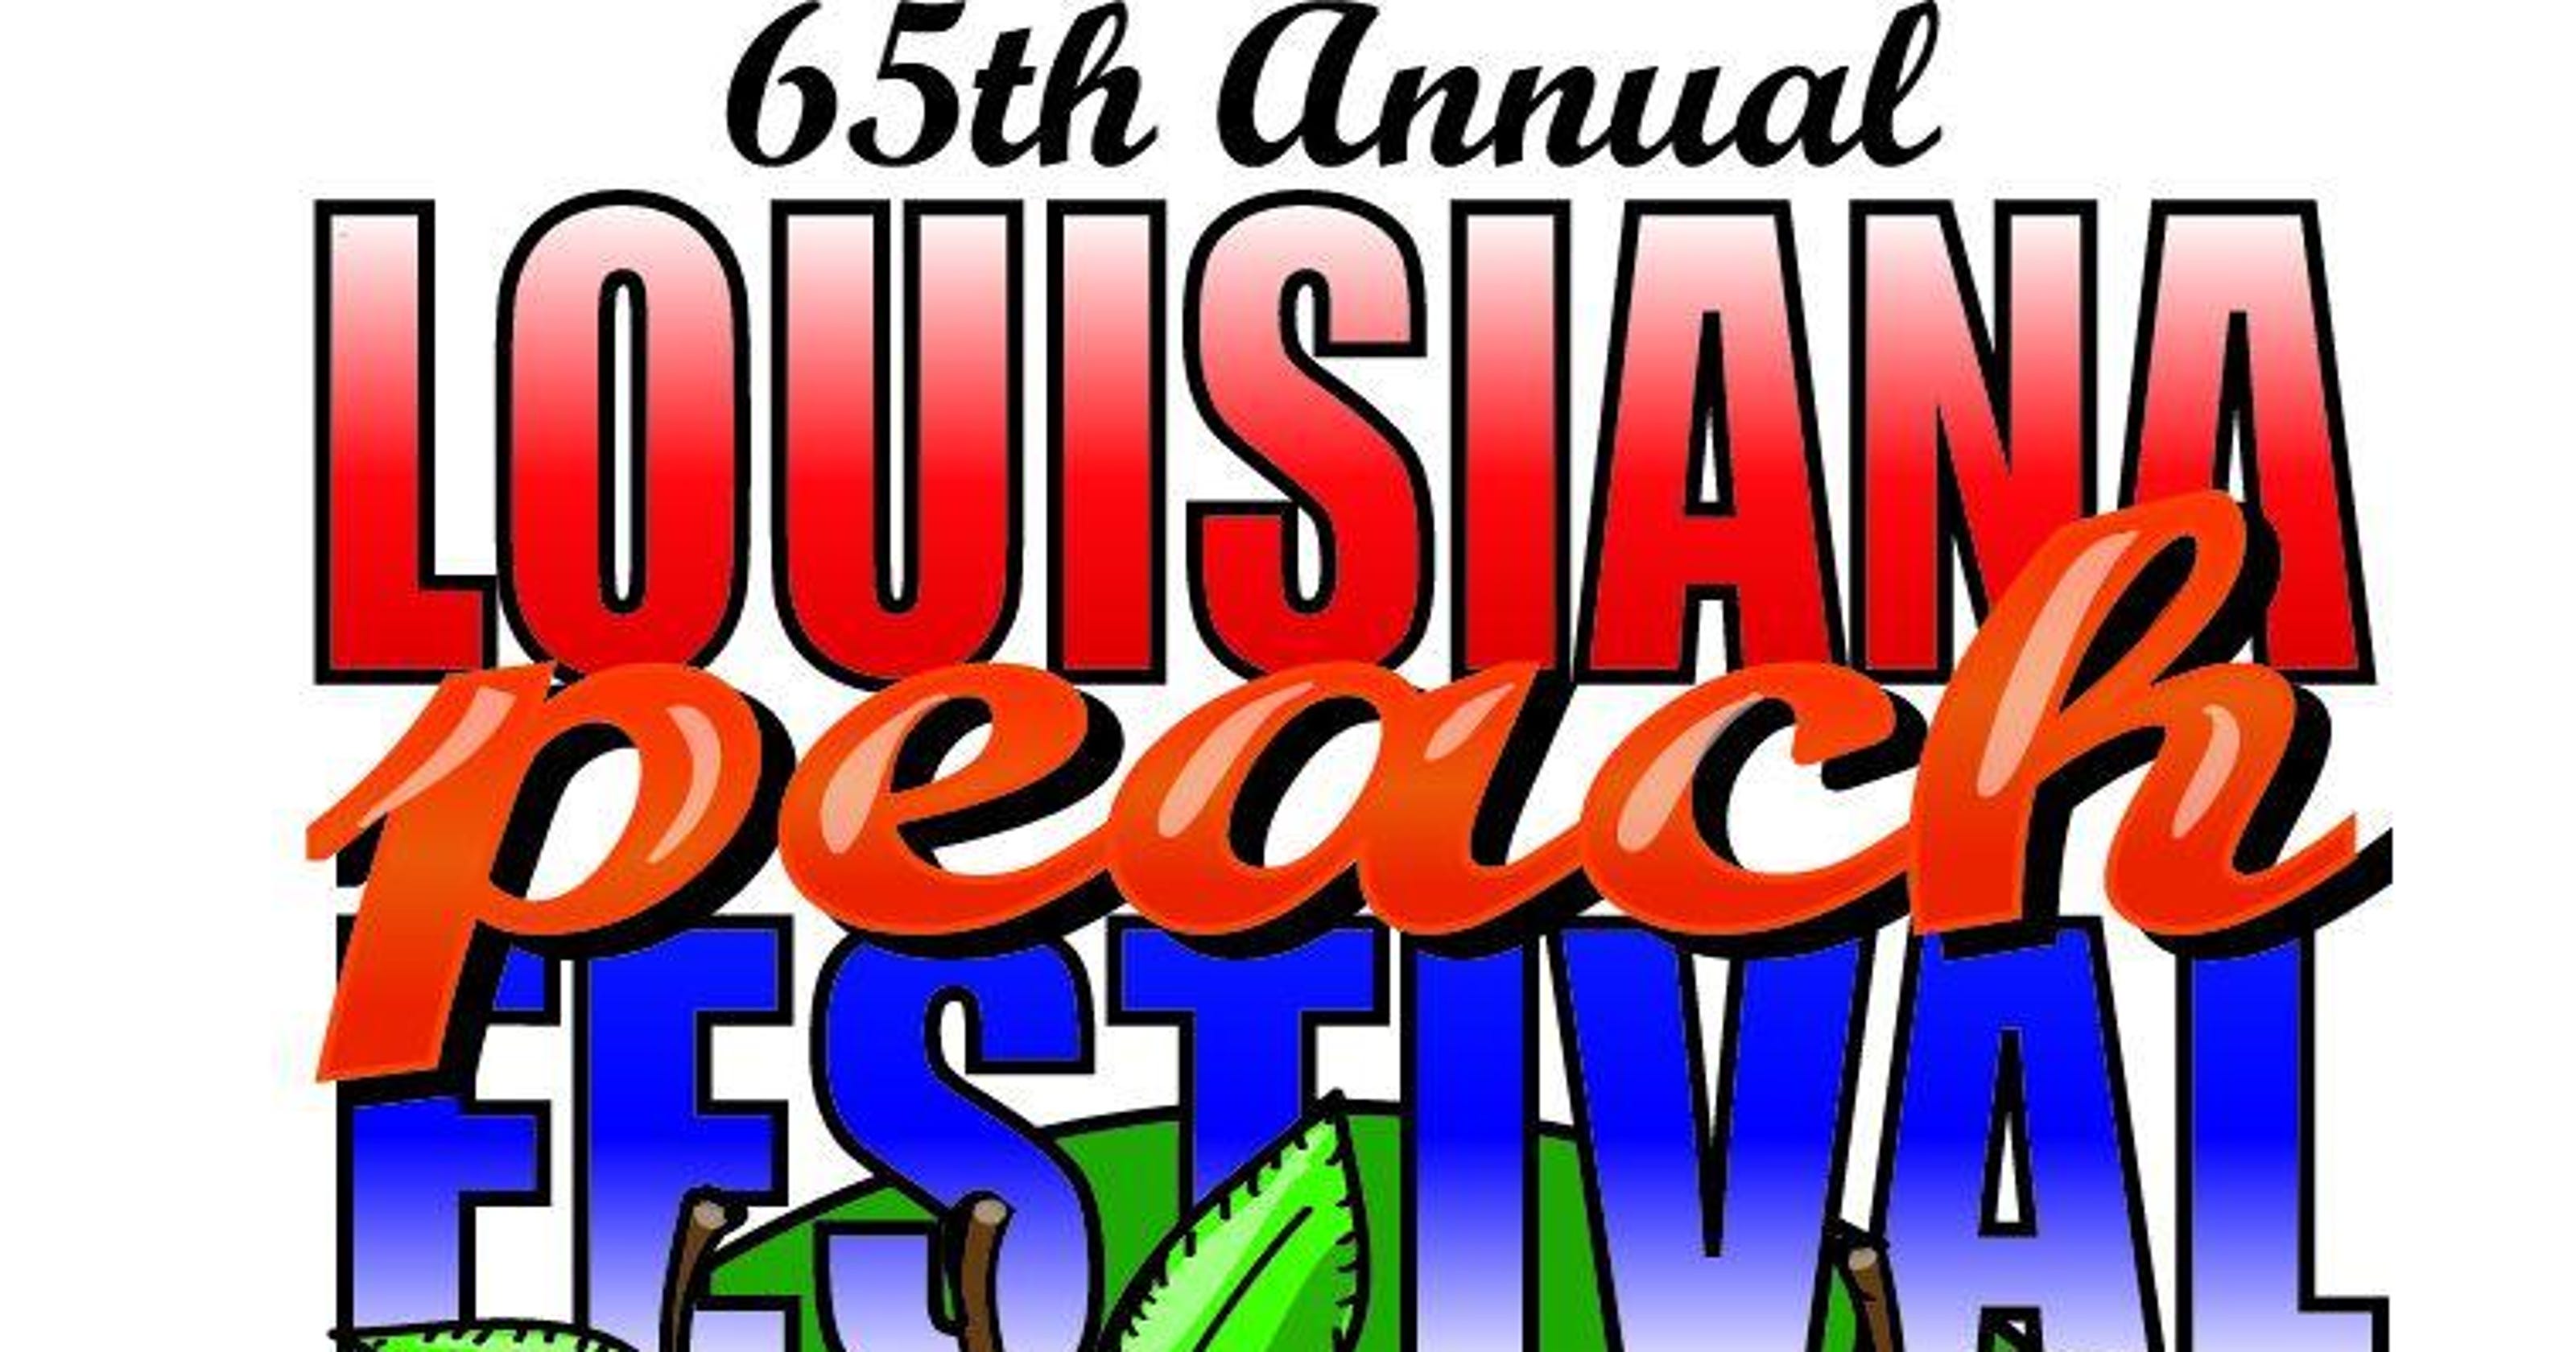 Louisiana Peach Festival June 2627 in Ruston